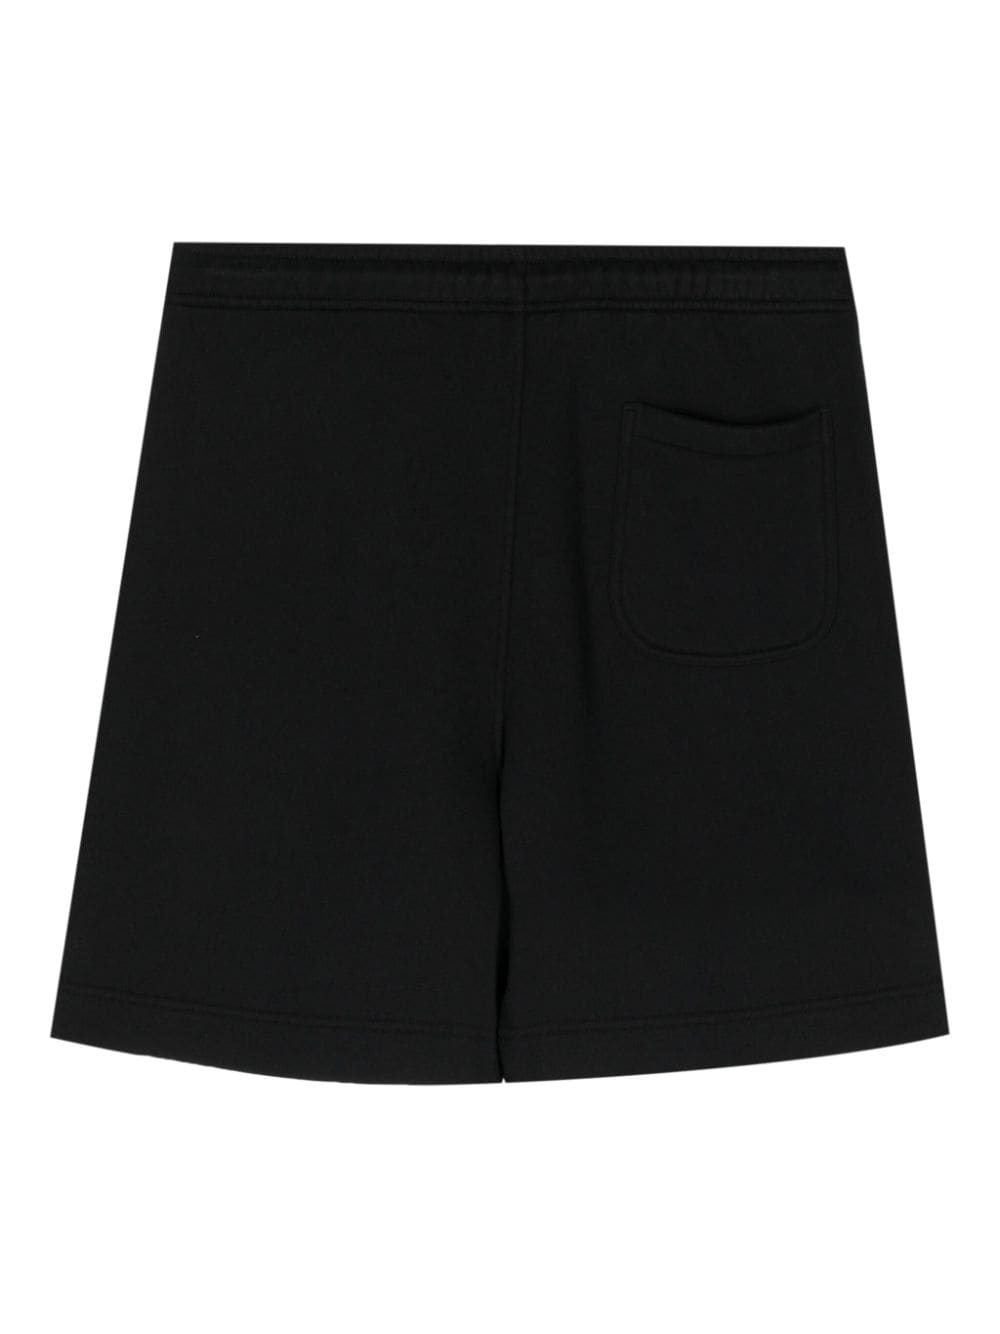 Maison Kitsune' Shorts Black